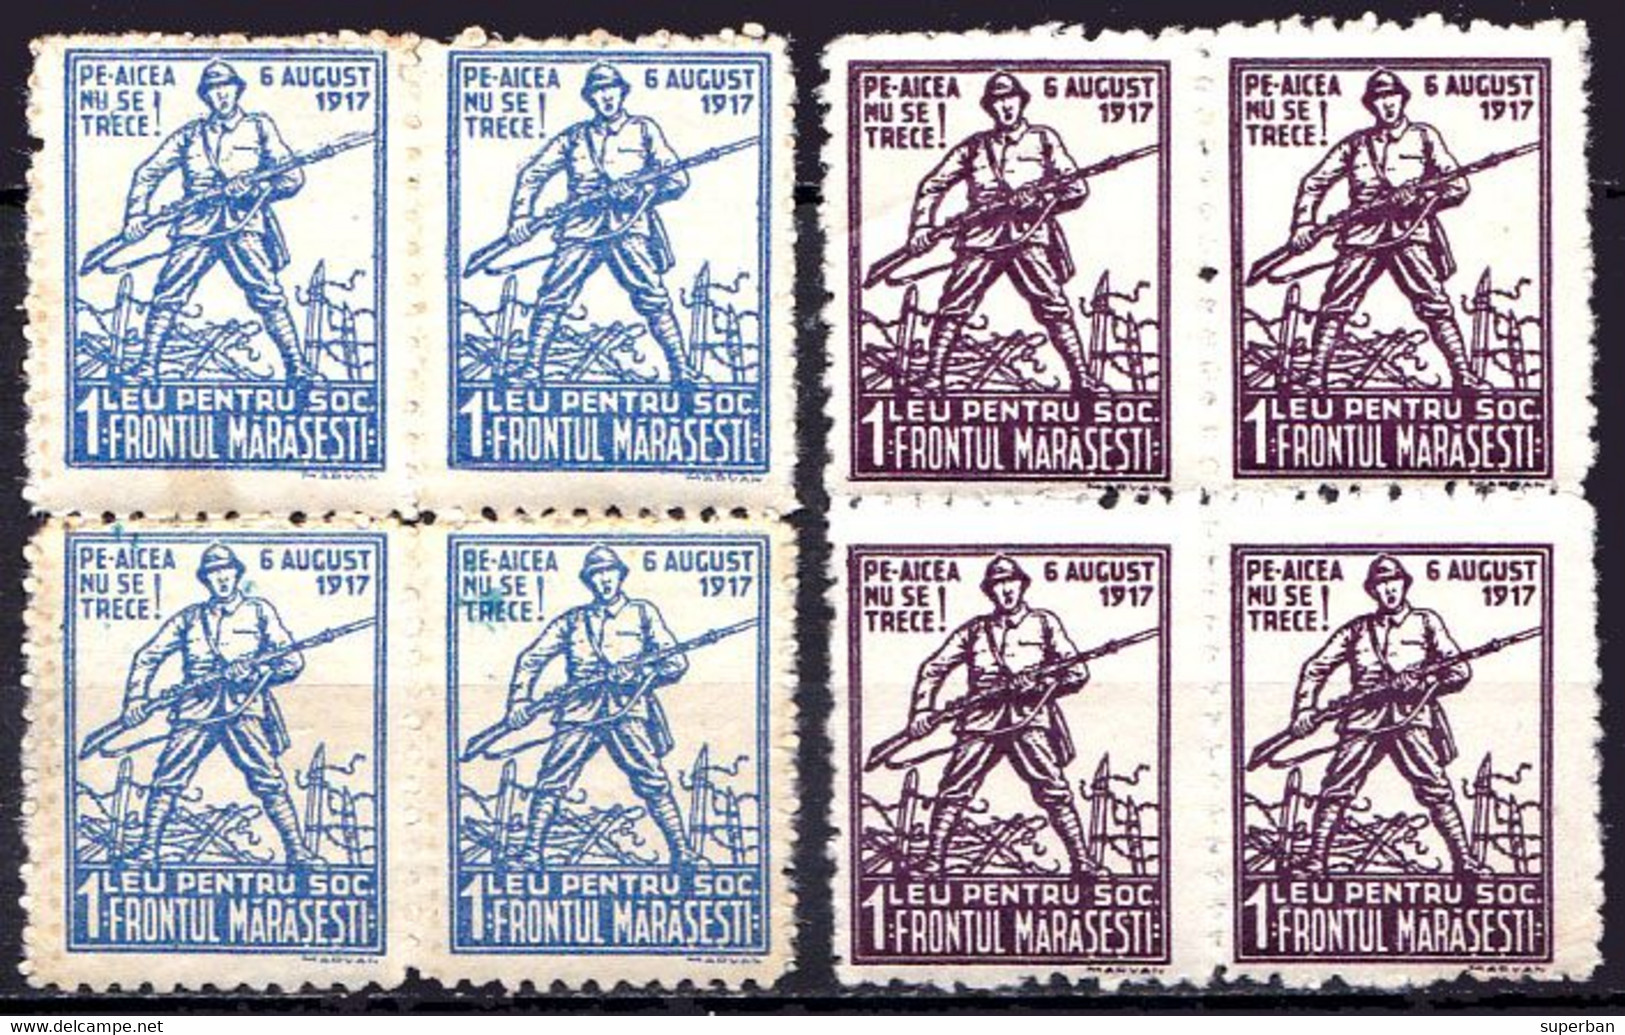 ROMANIA - CINDERELLA : SOCIETATEA FRONTUL MARASESTI / 6 AUGUST 1917 - 2 BLOCURI De 4 TIMBRE X 1 LEU ~ 1920 - MNH (ai526e - Steuermarken